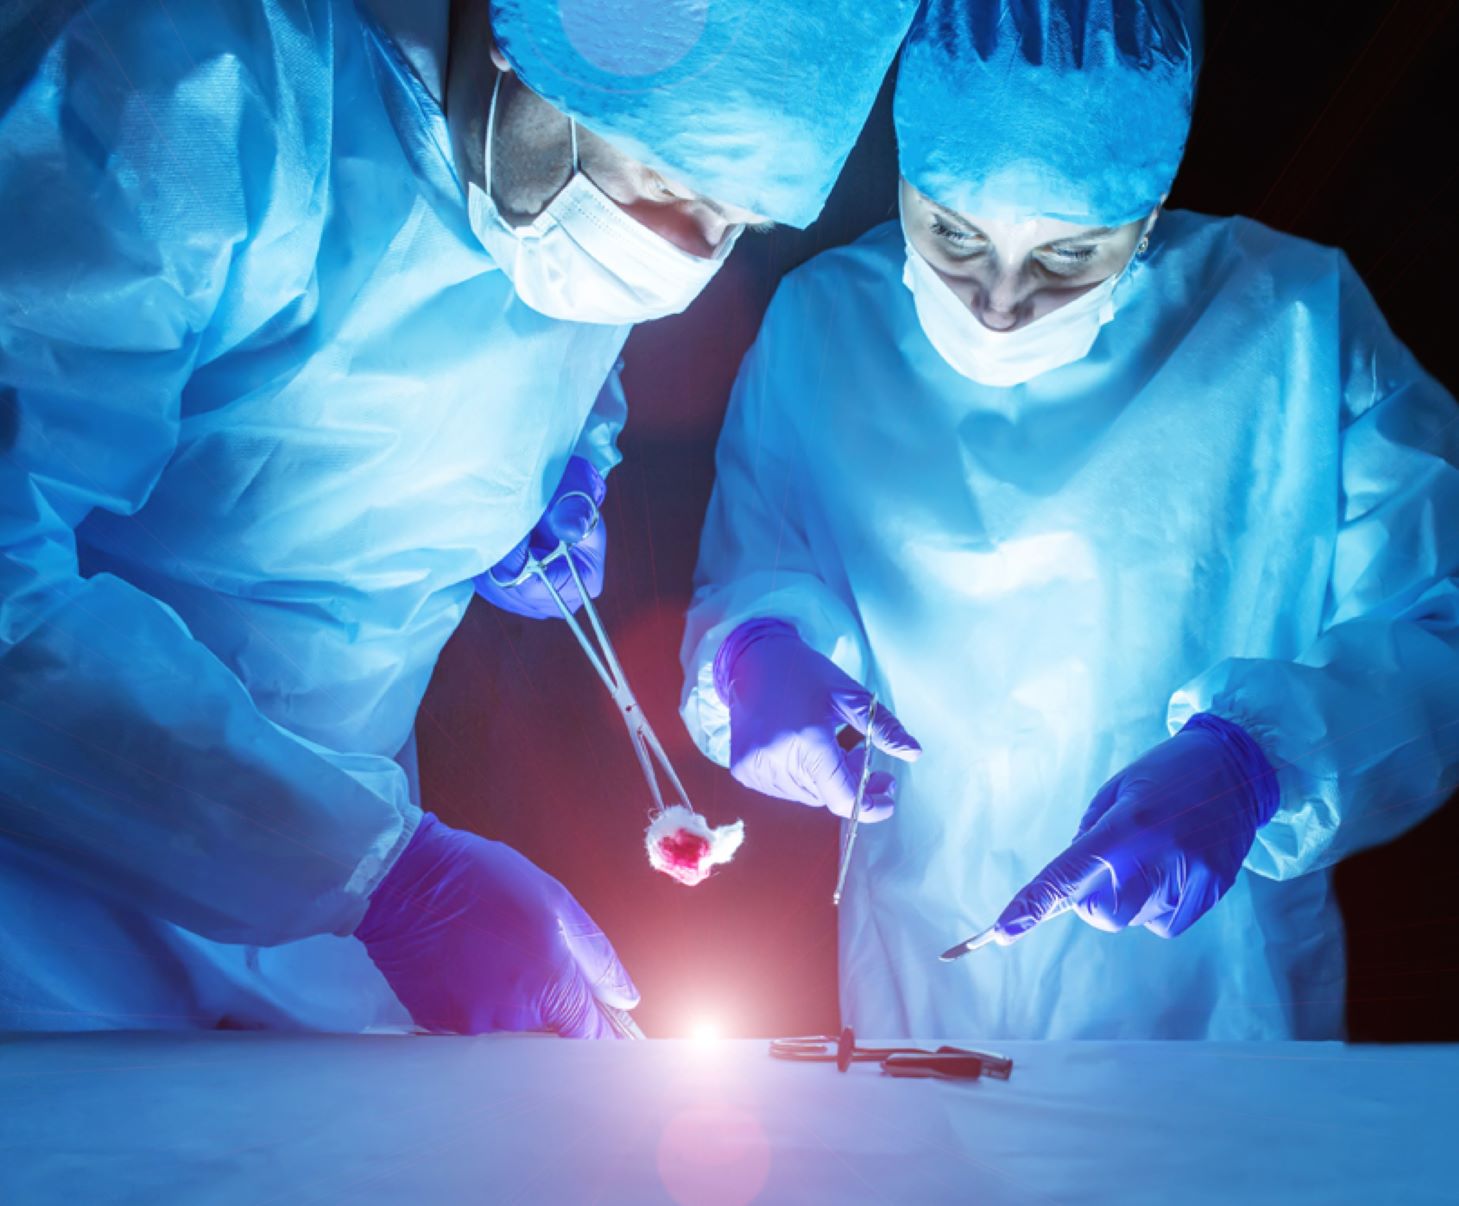 Λίστα χειρουργείων: Πότε θα λειτουργήσει η λίστα αναμονής χειρουργείων στα νοσοκομεία;